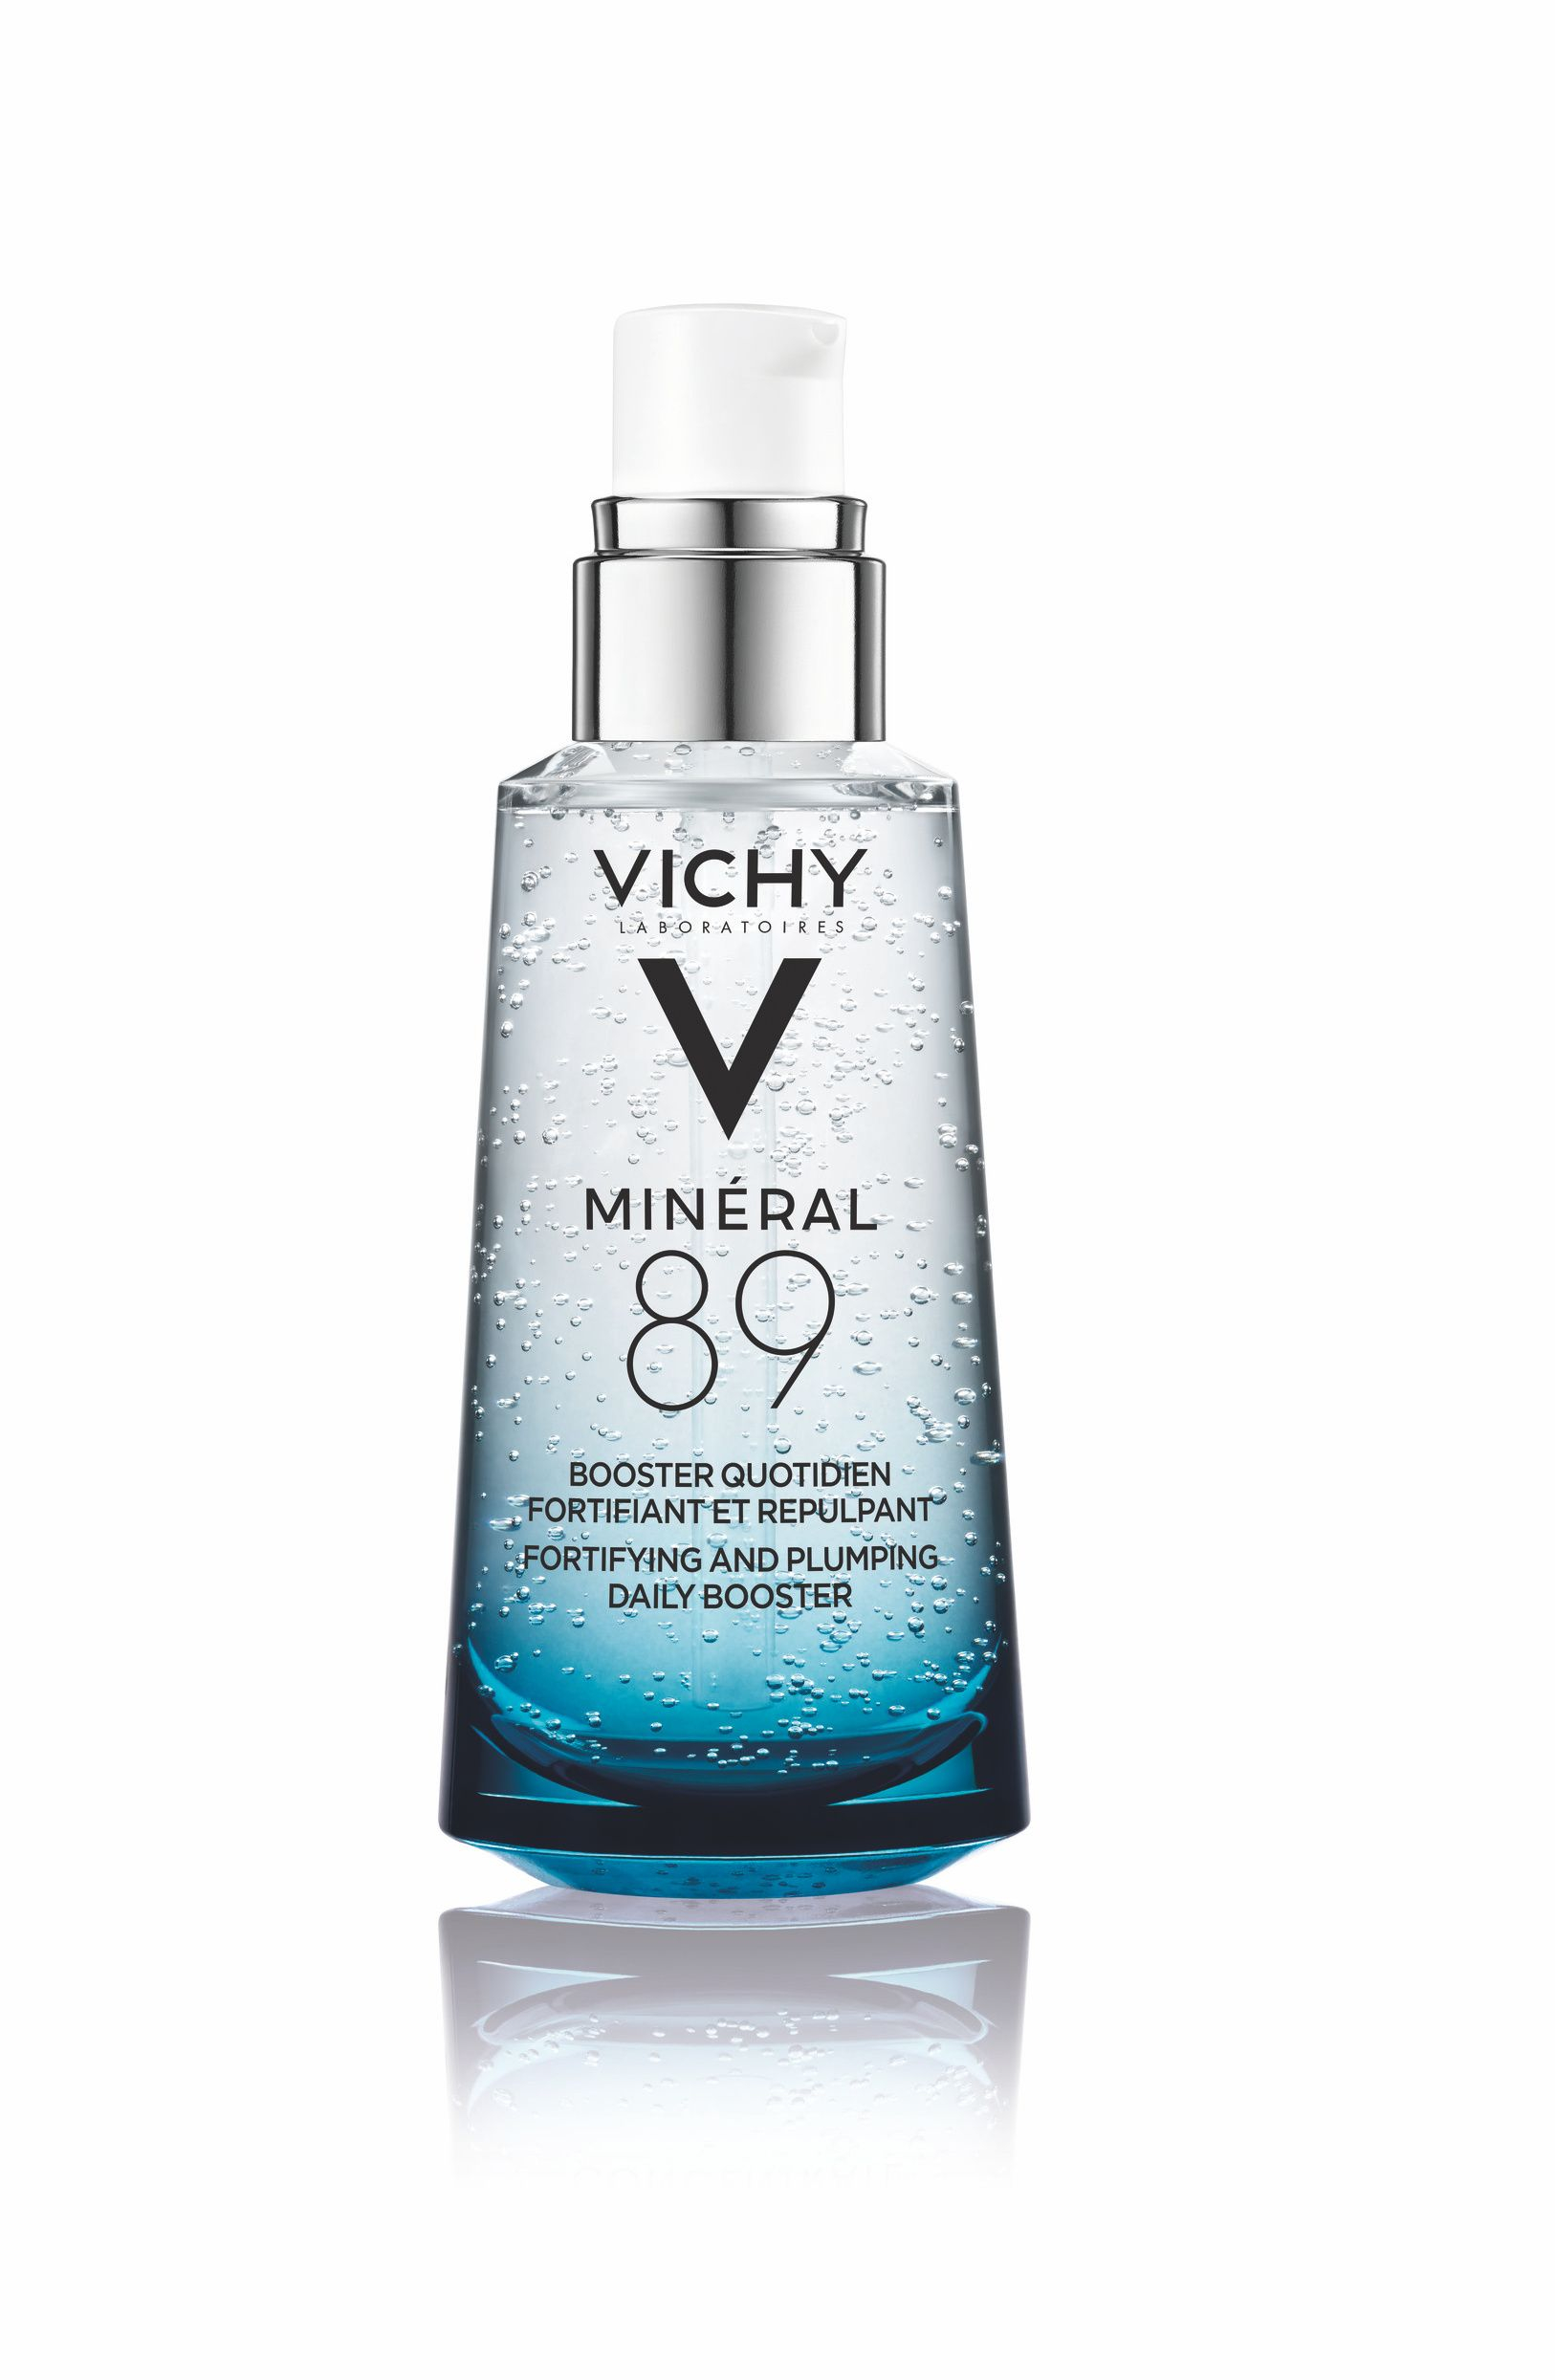 Vichy Minéral 89 Posilující a vyplňující hyaluron booster 50 ml Vichy